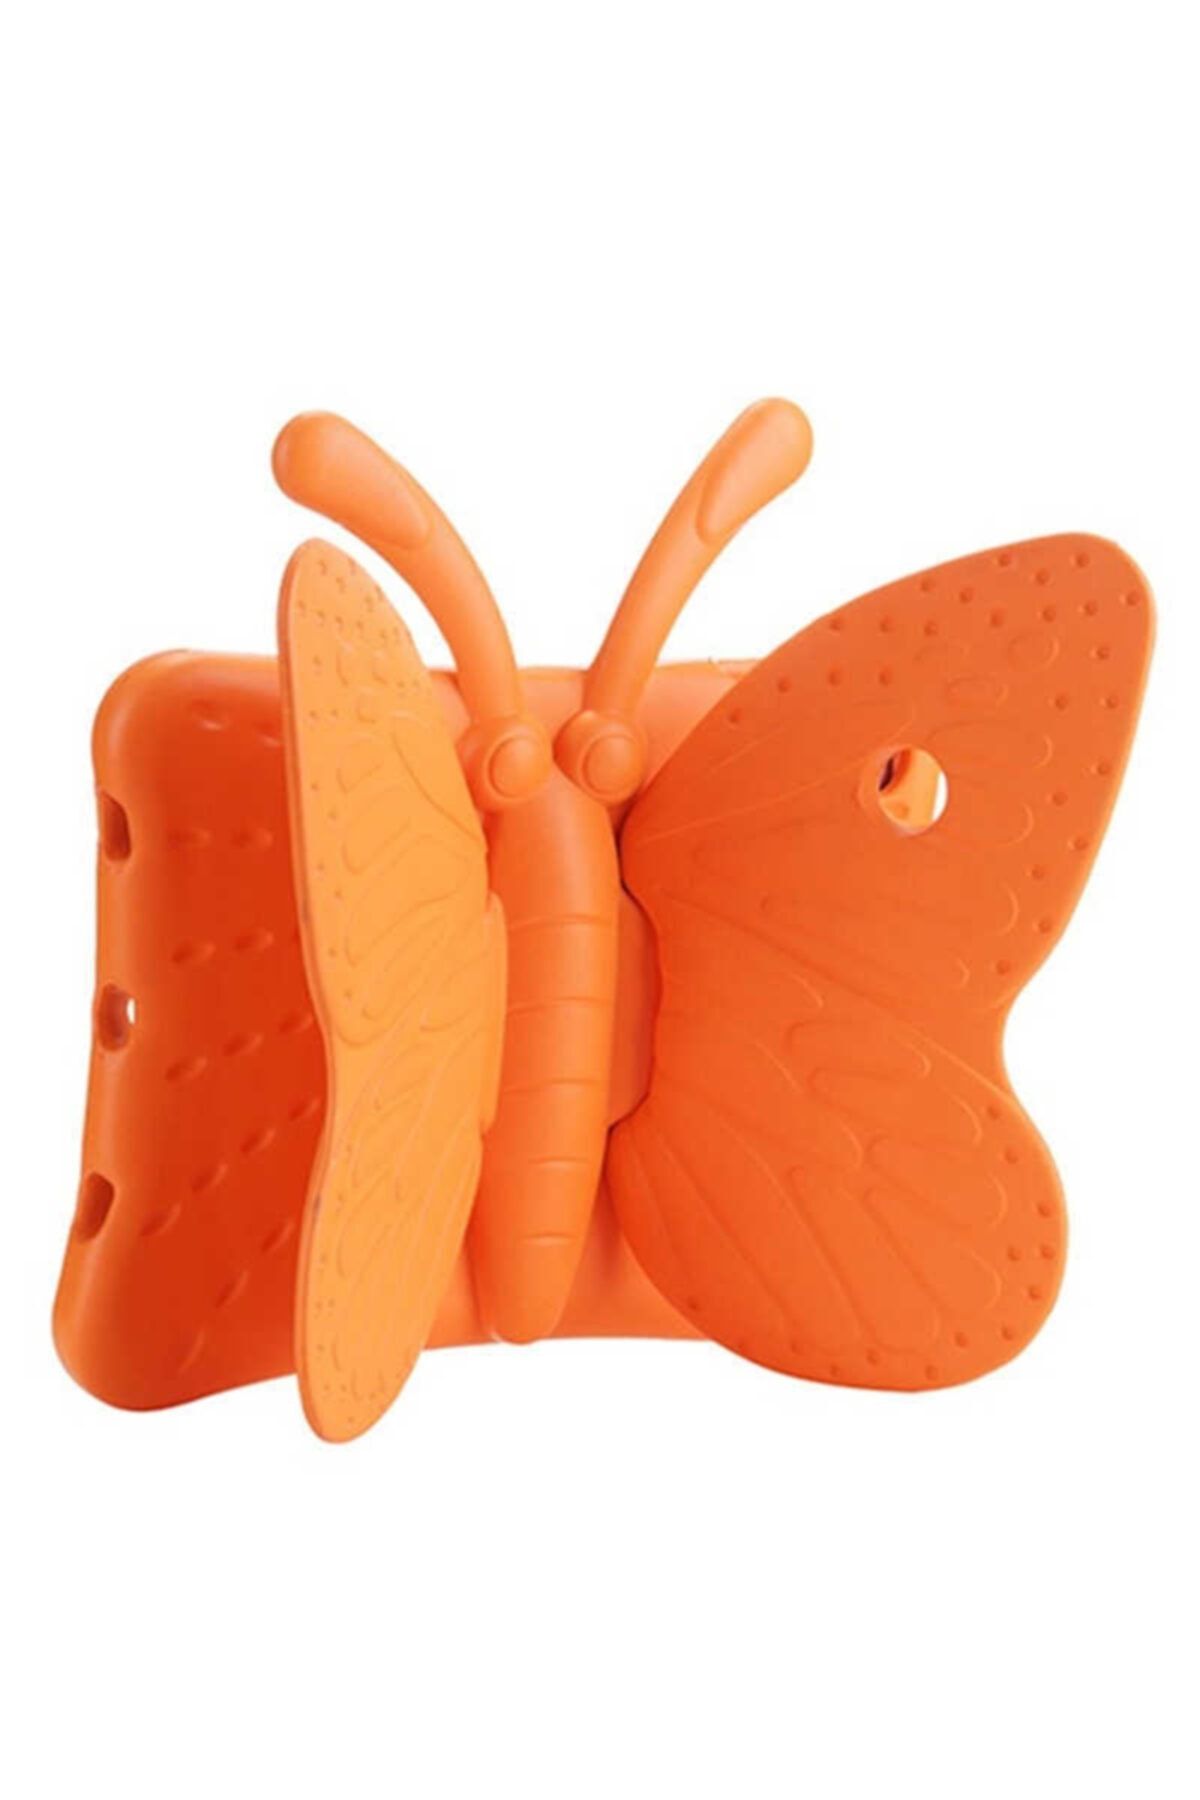 CEPCASE Ipad Mini 5 Tablet Kılıfı Butterfly Kelebekli Çocuklar Için Standlı Silikon Kılıf